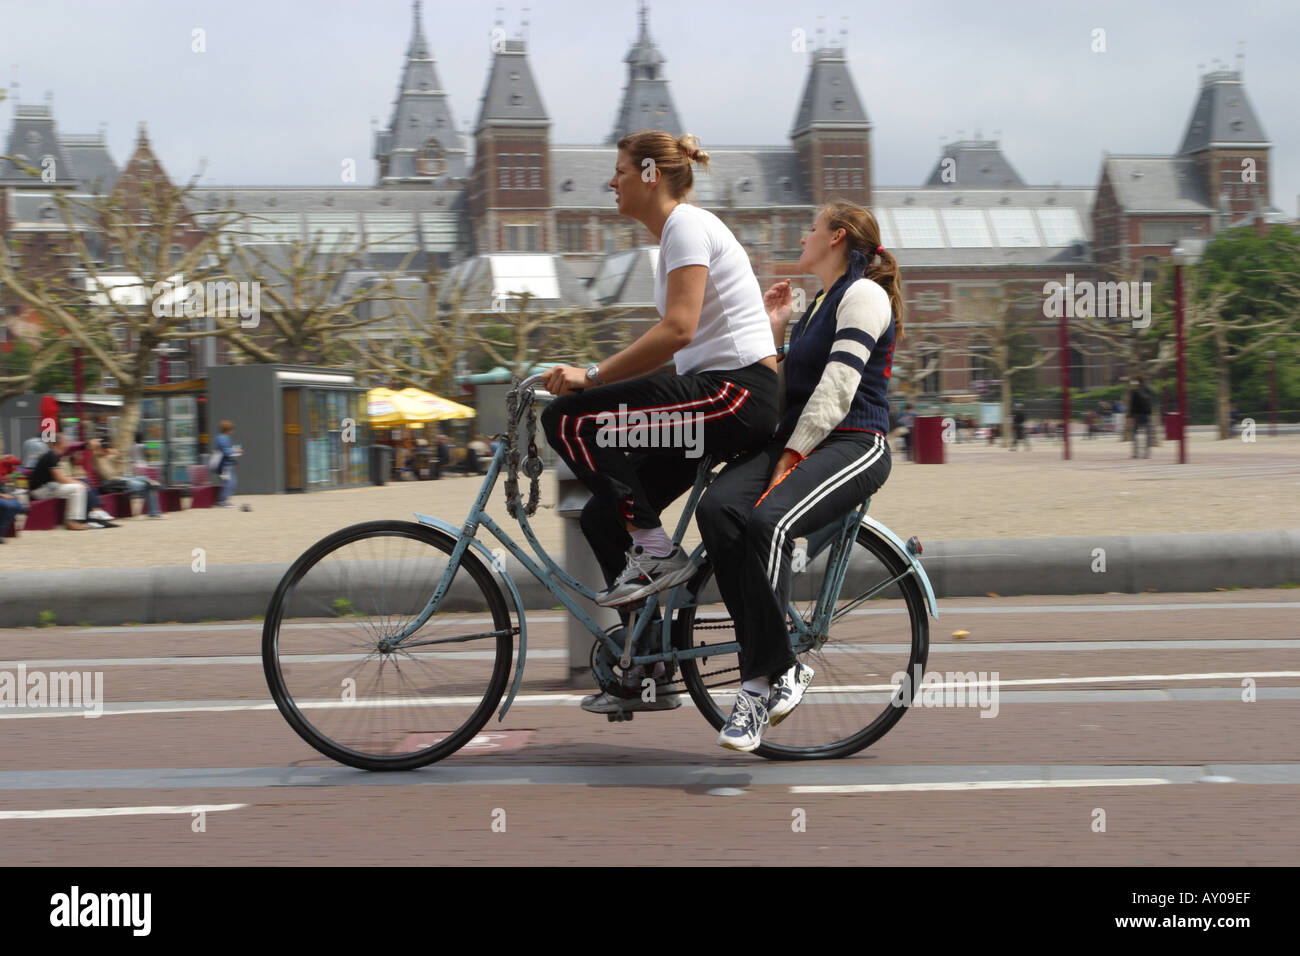 Deux jeunes femmes partagent un vélo comme ils le cycle passé Rijksmuseum à Amsterdam Pays-Bas Banque D'Images